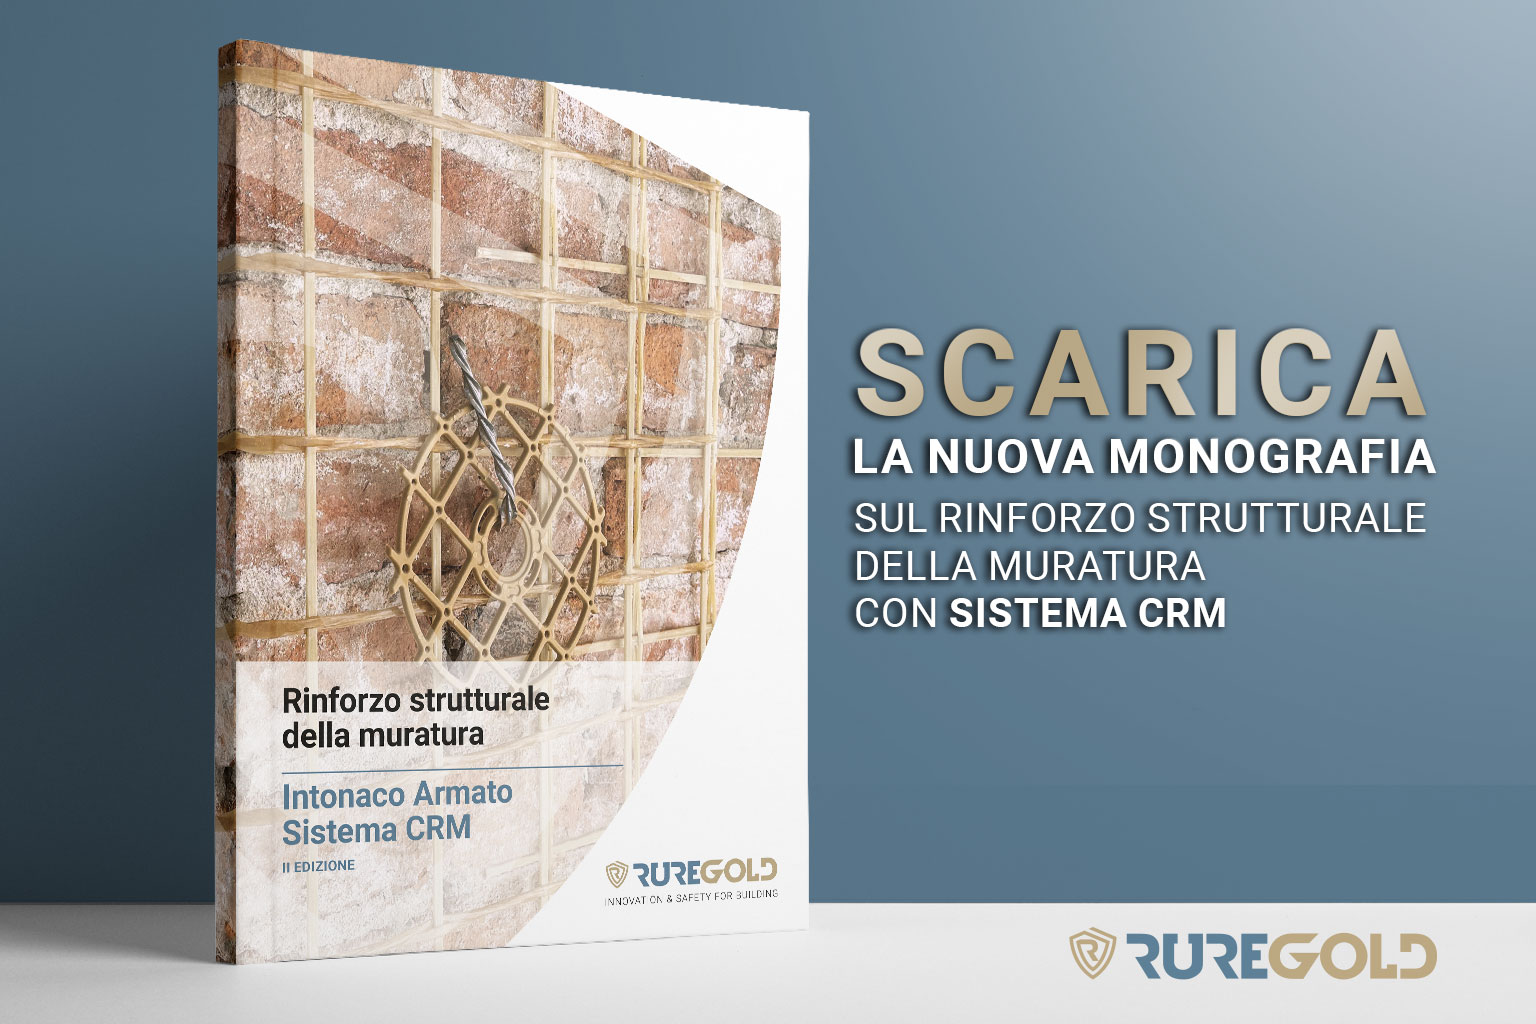 La nuova monografia sul rinforzo strutturale con intonaco armato -Sistema CRM di Ruregold: scaricala!